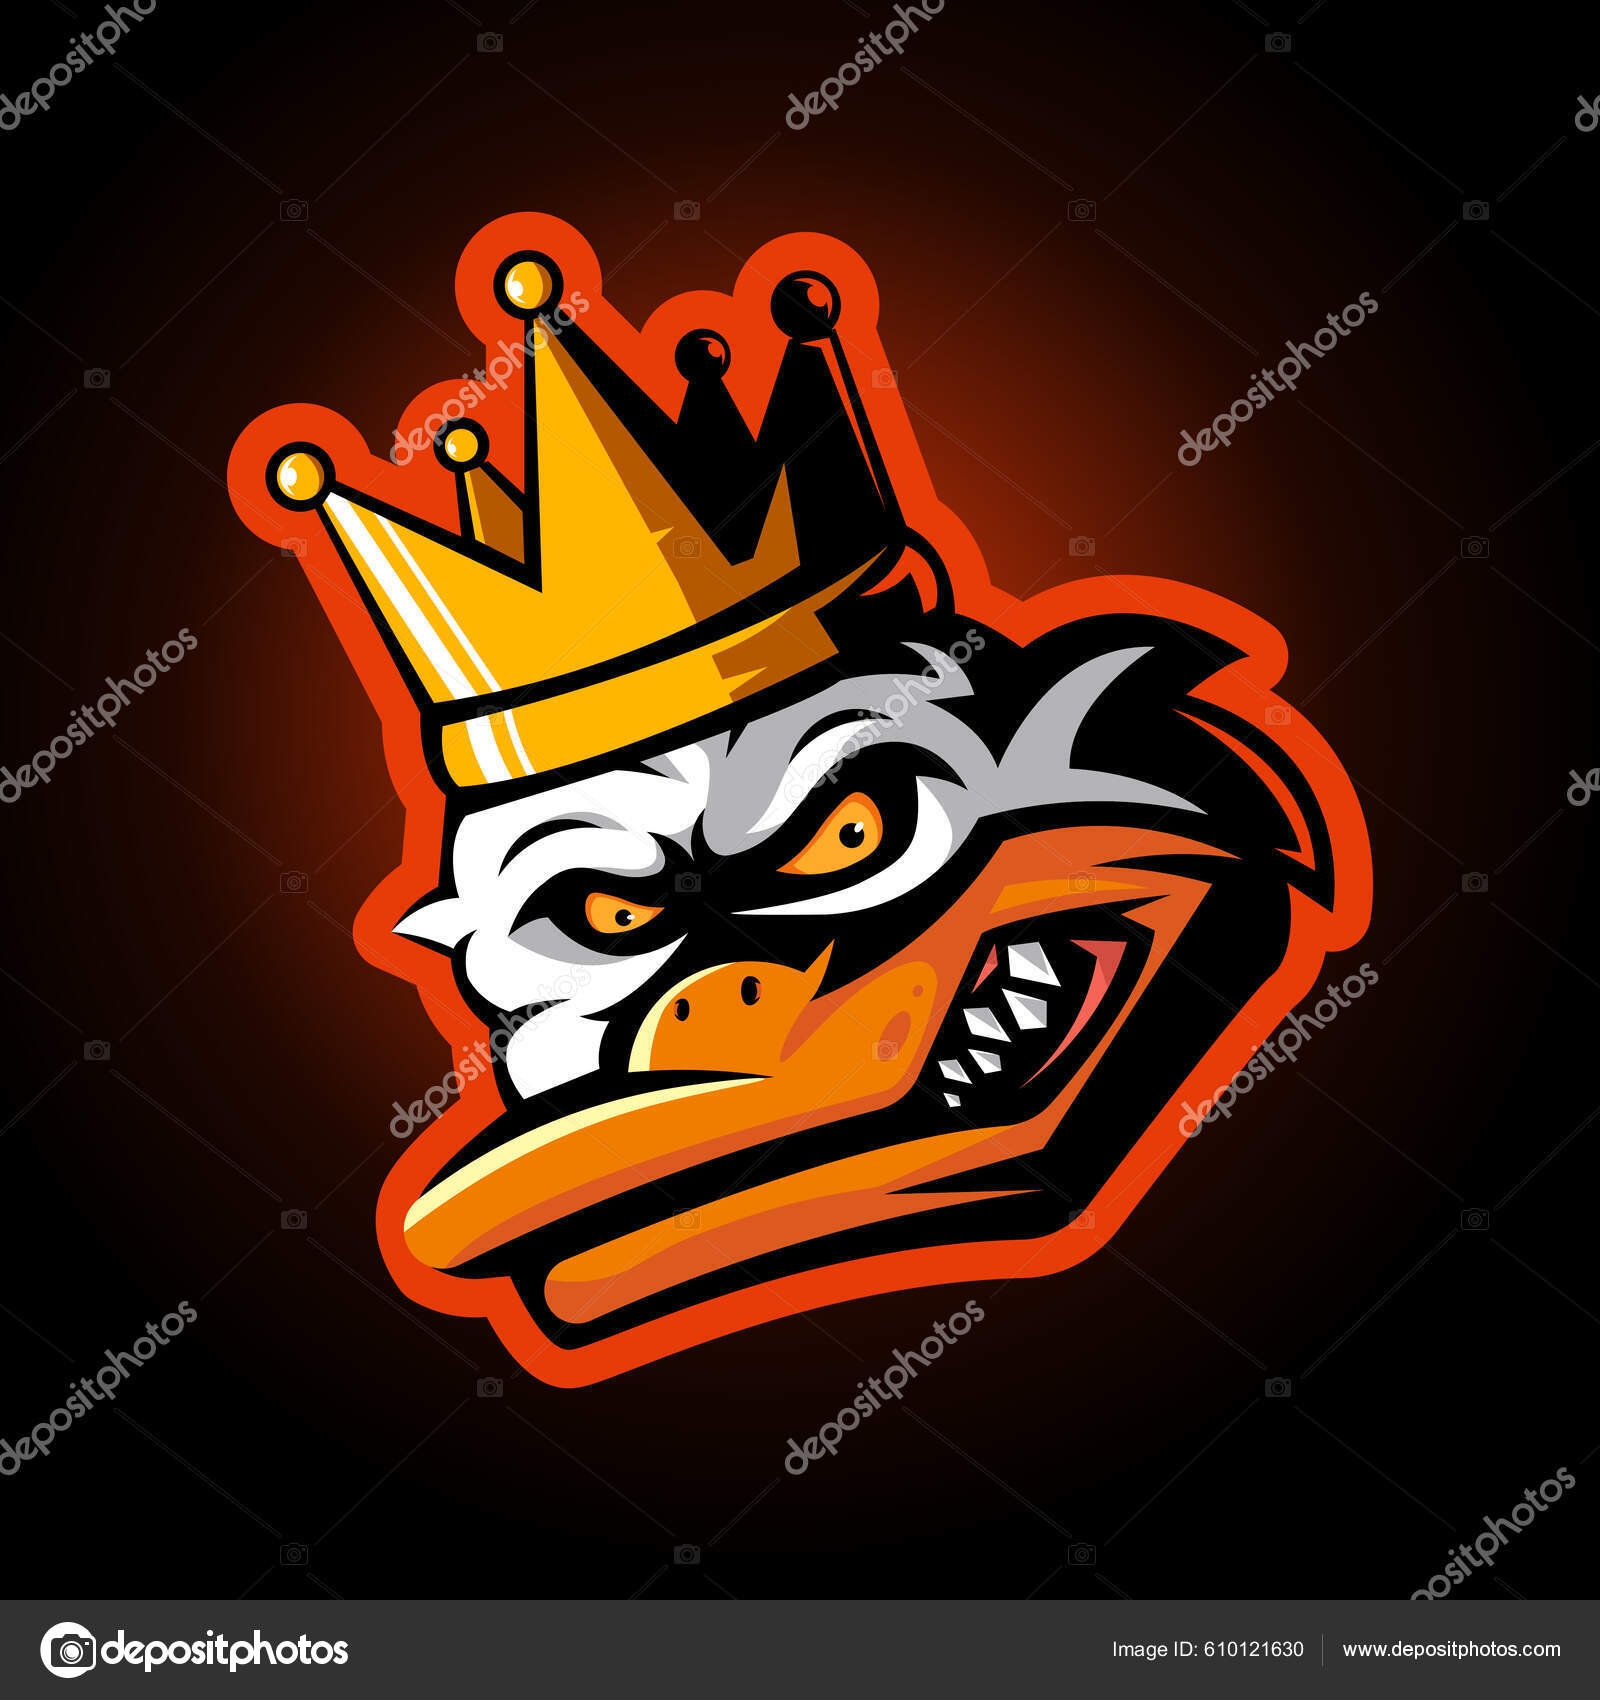 https://st.depositphotos.com/50988222/61012/v/1600/depositphotos_610121630-stock-illustration-duck-king-mascot-logo-design.jpg